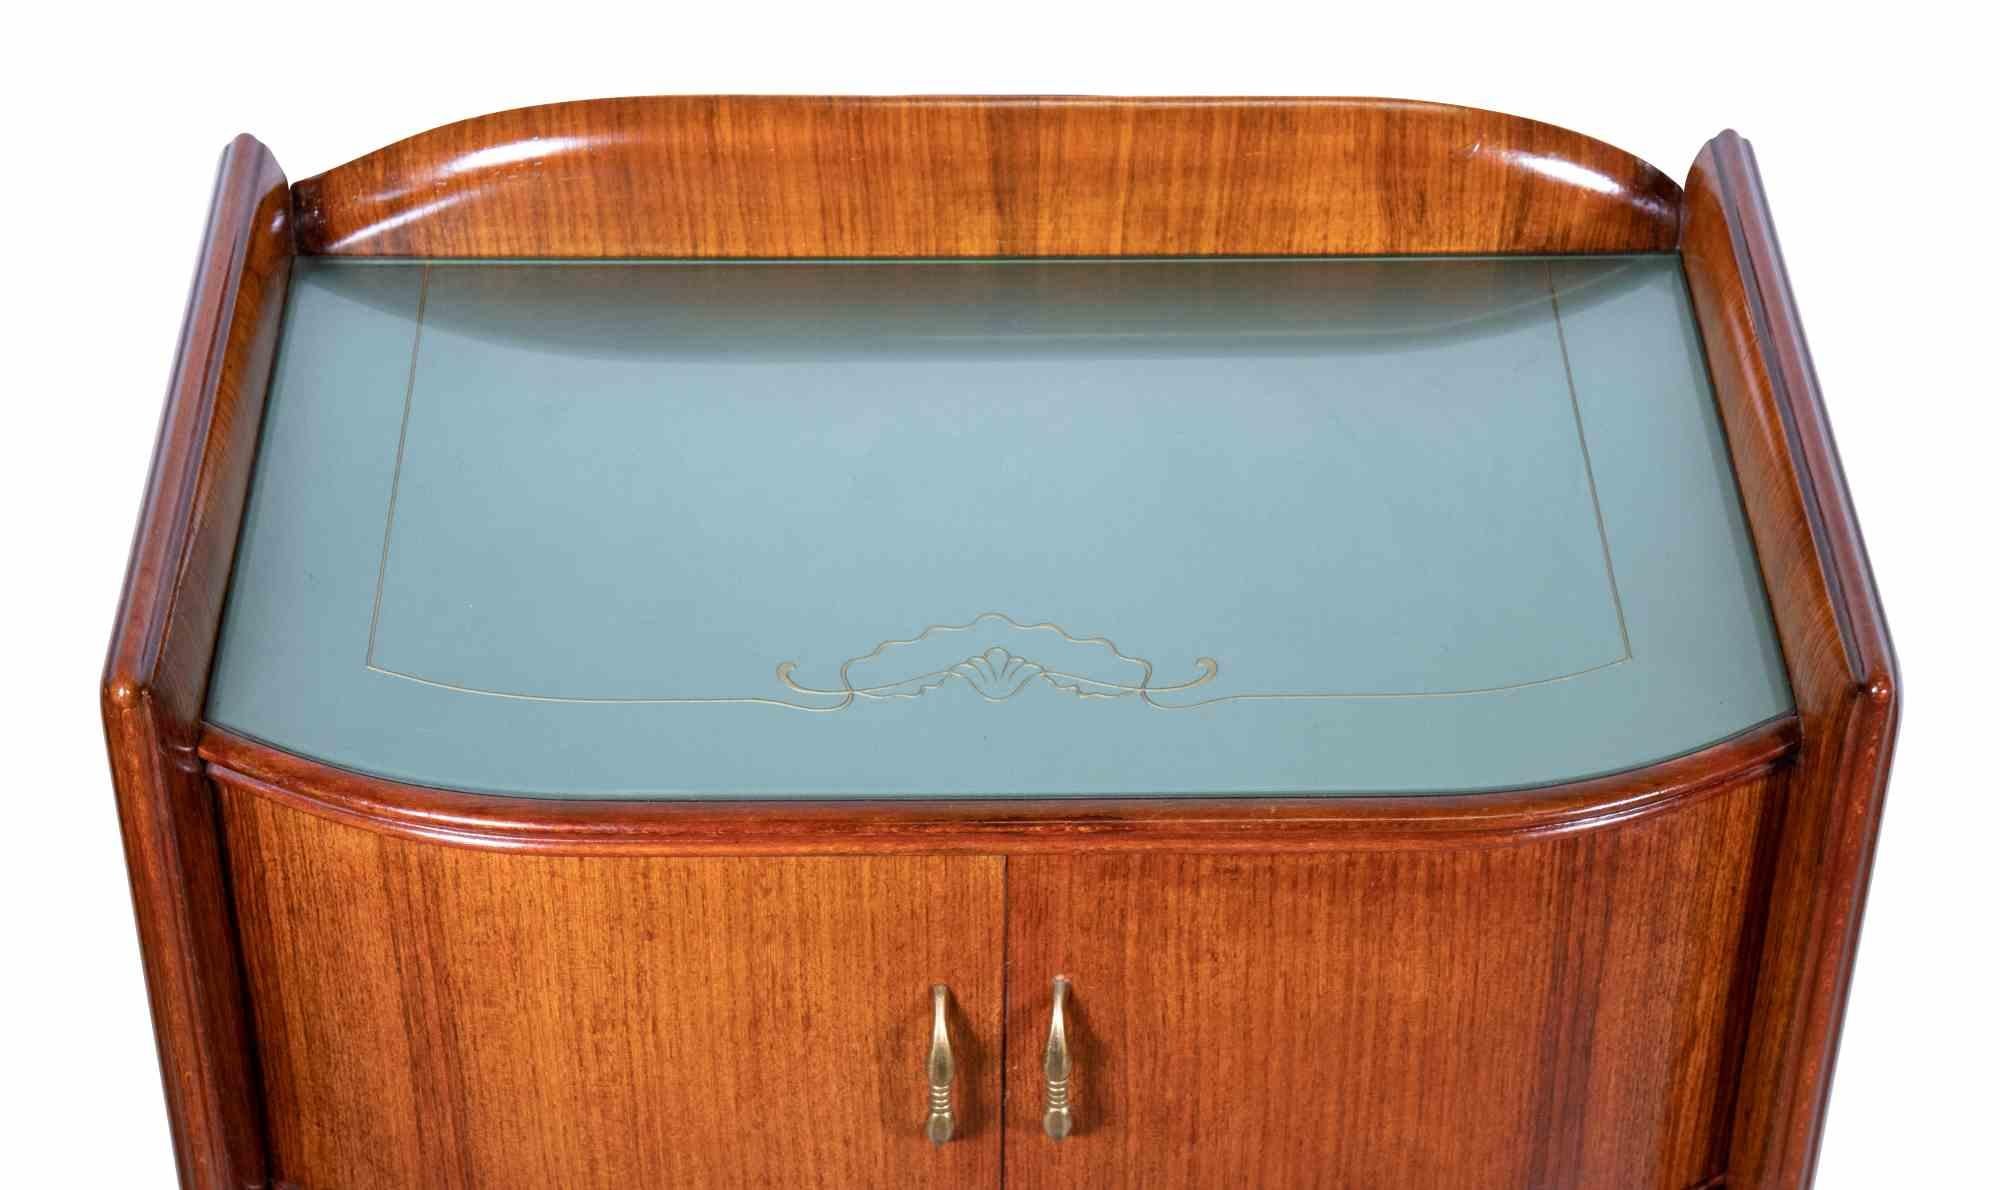 Das Nachttischpaar ist ein originelles Designobjekt, das in den 1970er Jahren von Vittorio Dassi realisiert wurde.

Ein elegantes Paar Nachttische aus Holz mit dekorativer Platte.

Die Kreationen von Vittorio Dassi (1893-1973), die in den 1940er